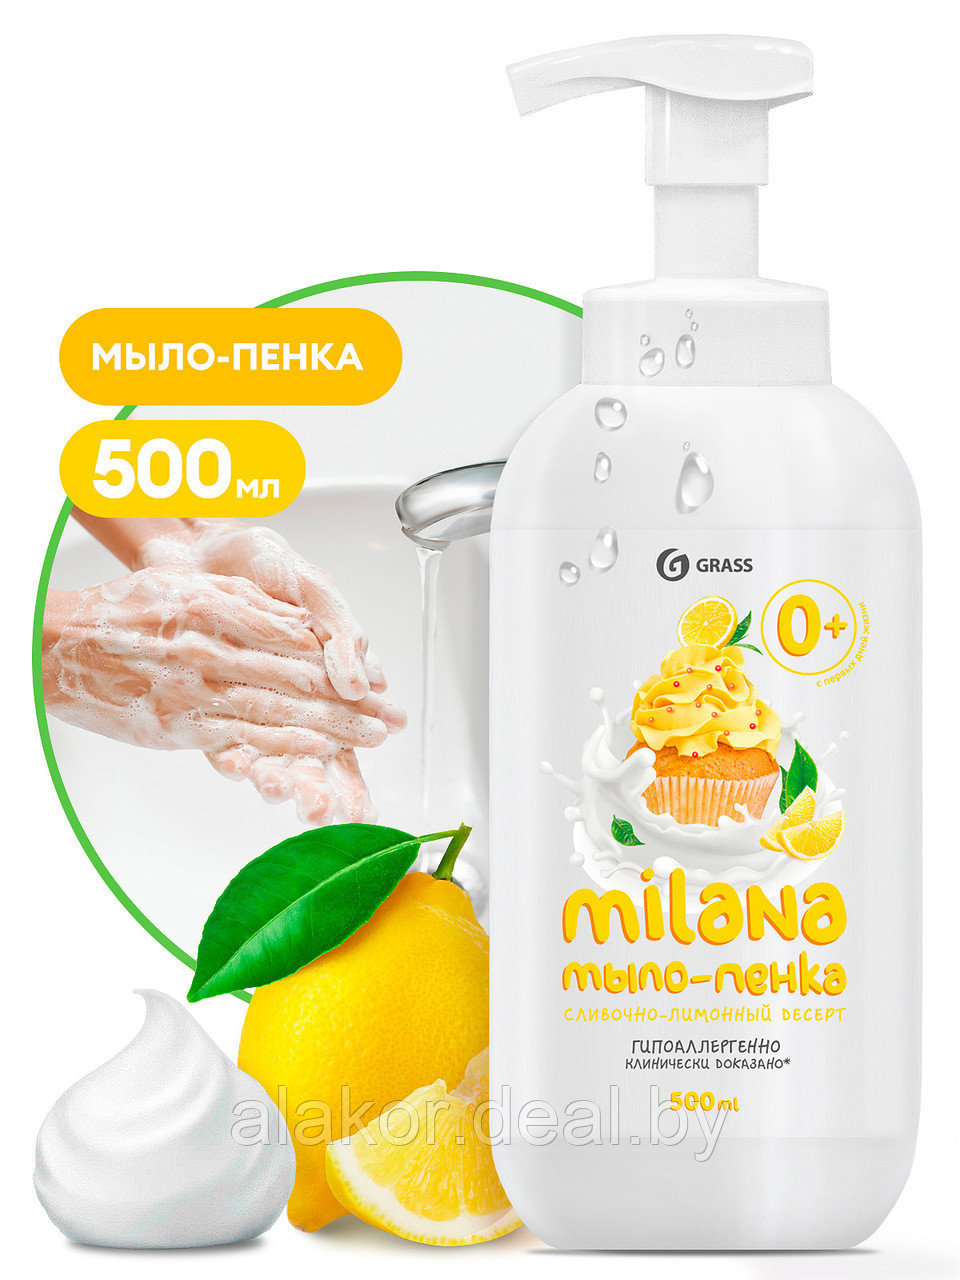 Мыло-пена "Milana антибактериальное", 500 мл. лимонный пирог